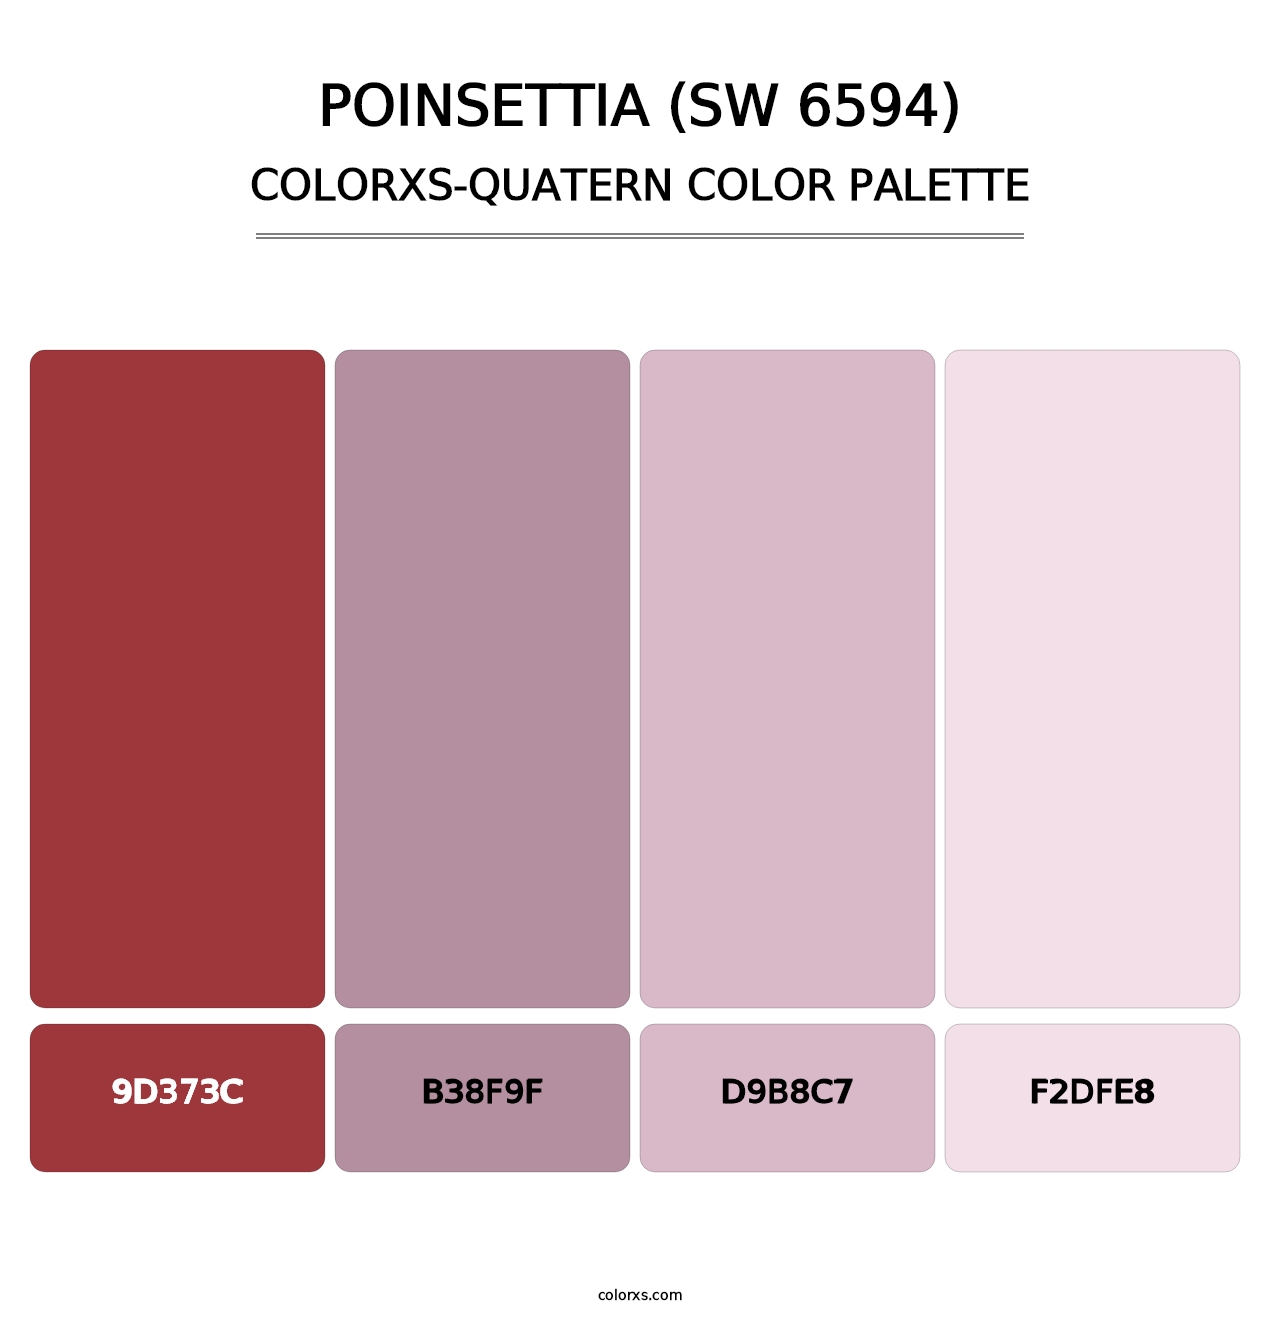 Poinsettia (SW 6594) - Colorxs Quatern Palette